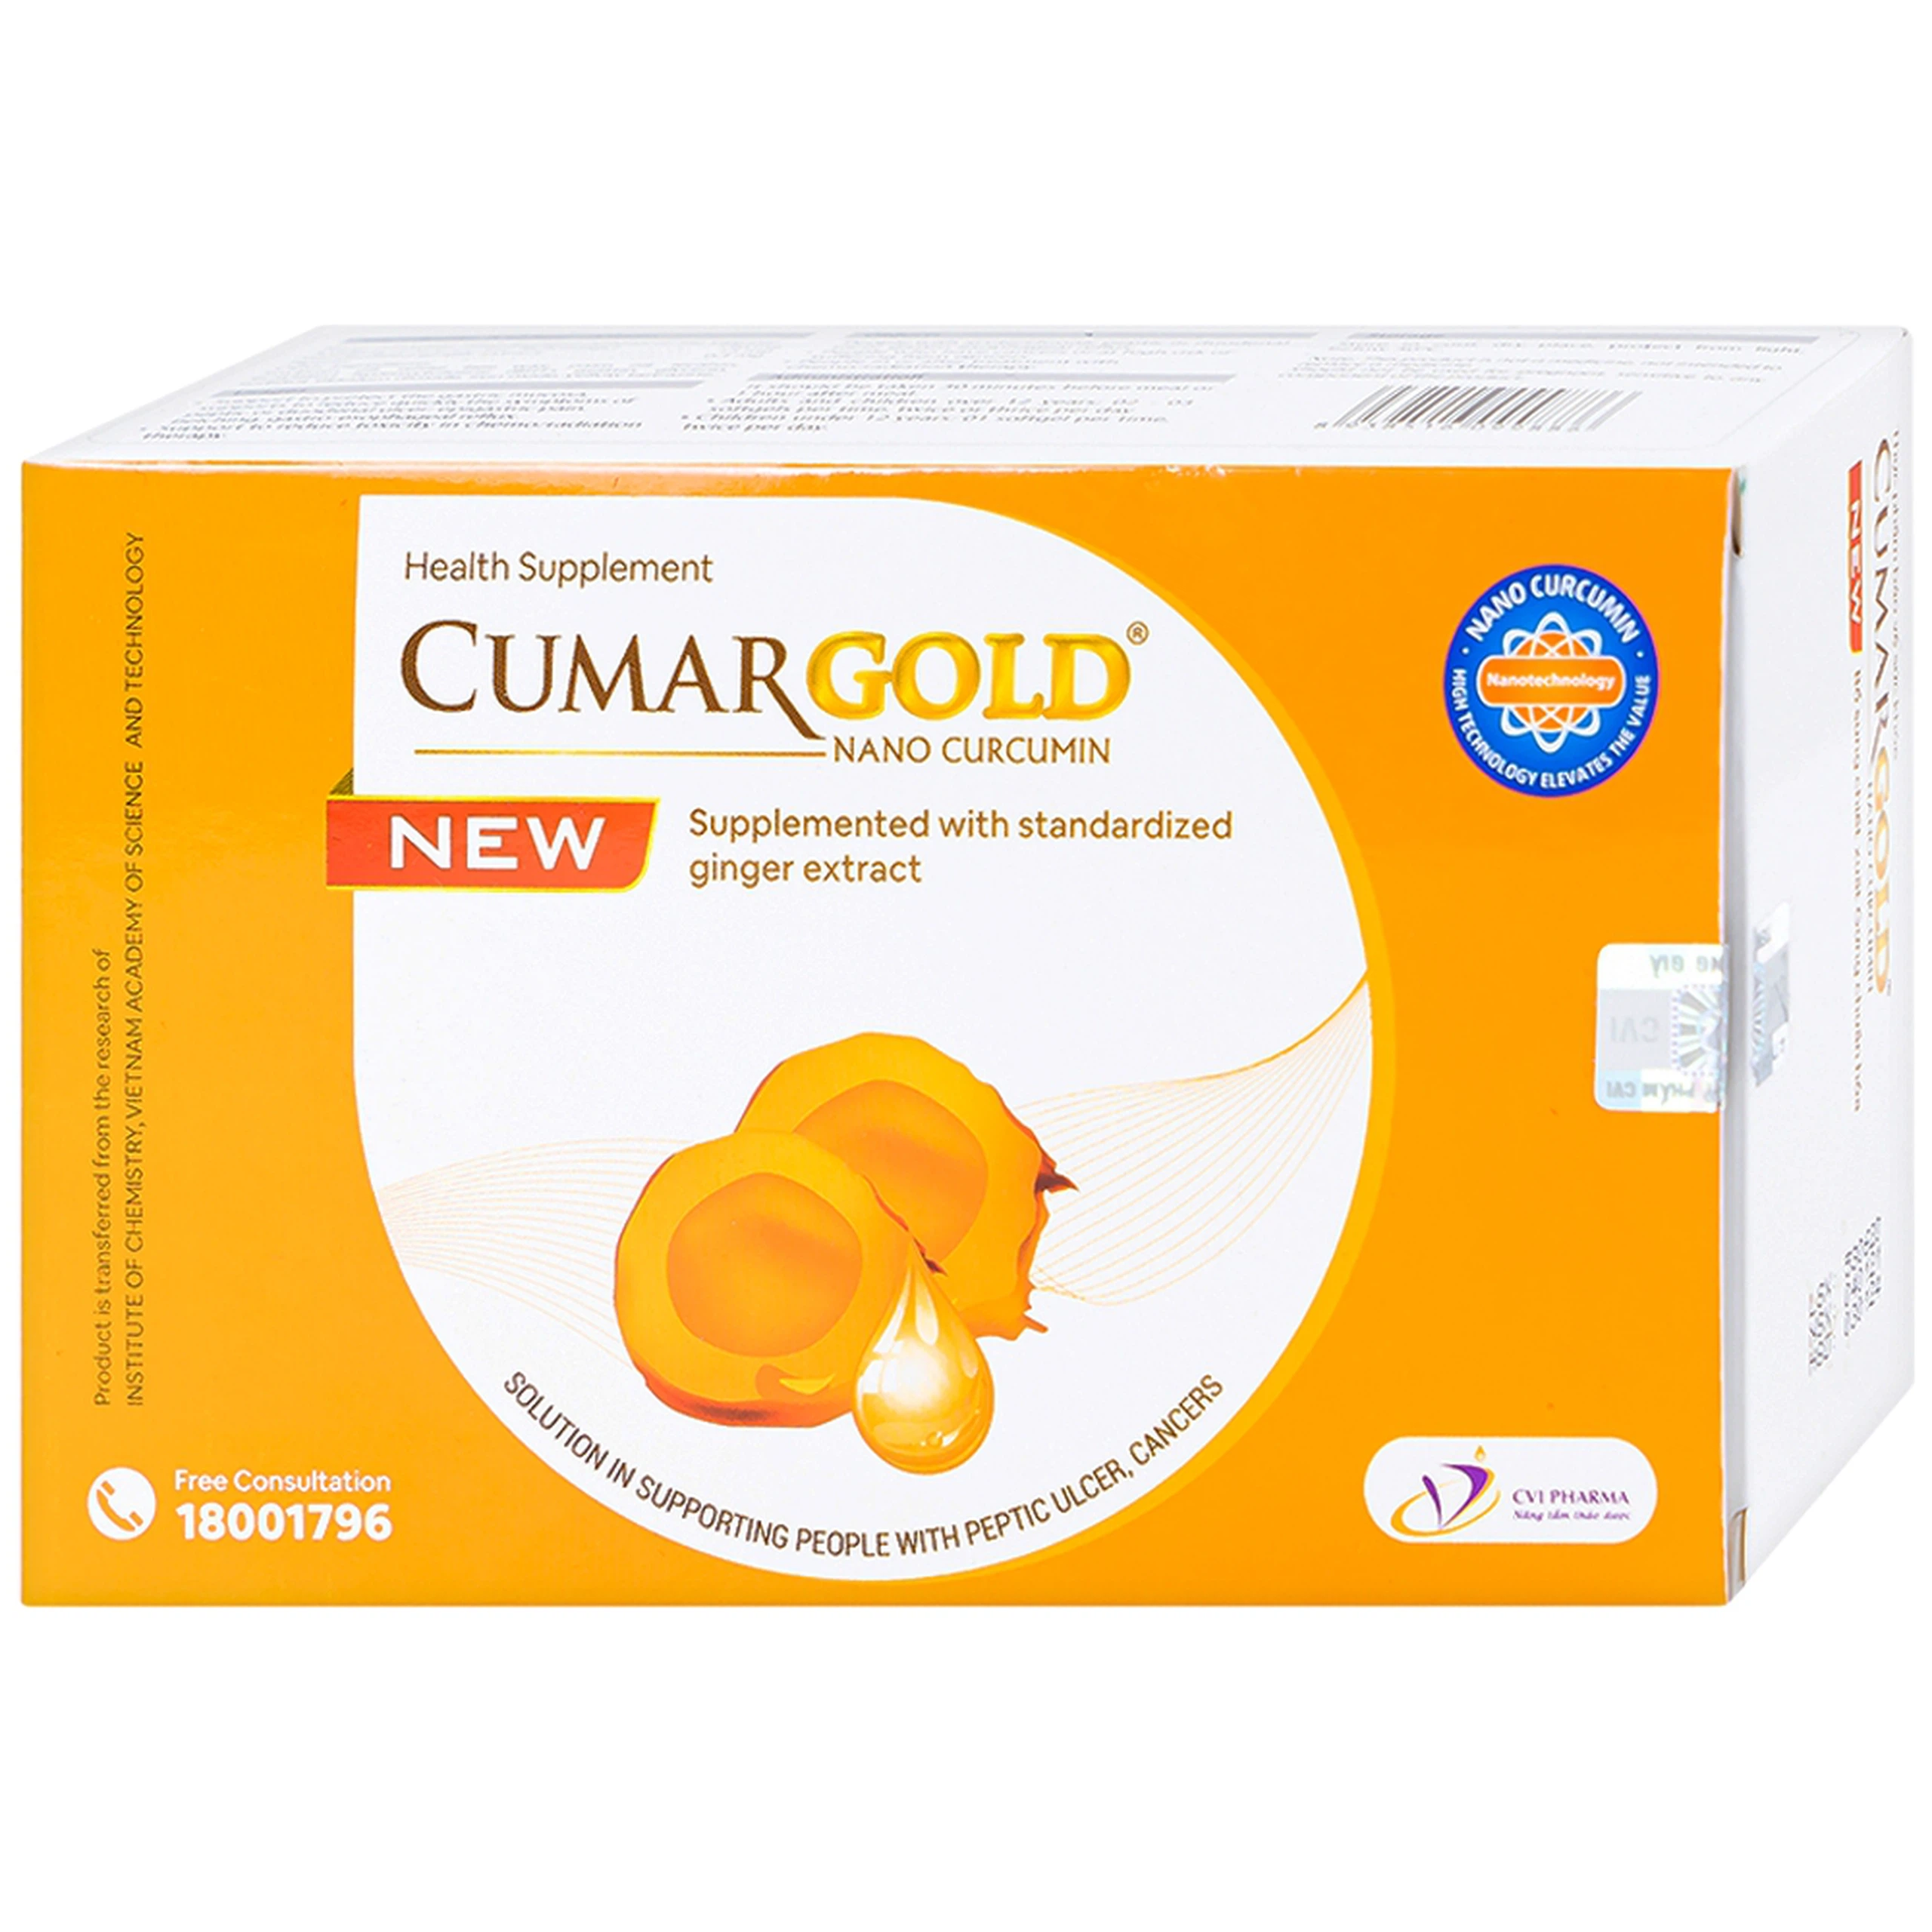 Viên uống CumarGold Nano Curcumin New CVI Pharma hỗ trợ bảo vệ niêm mạc dạ dày (4 vỉ x 10 viên)